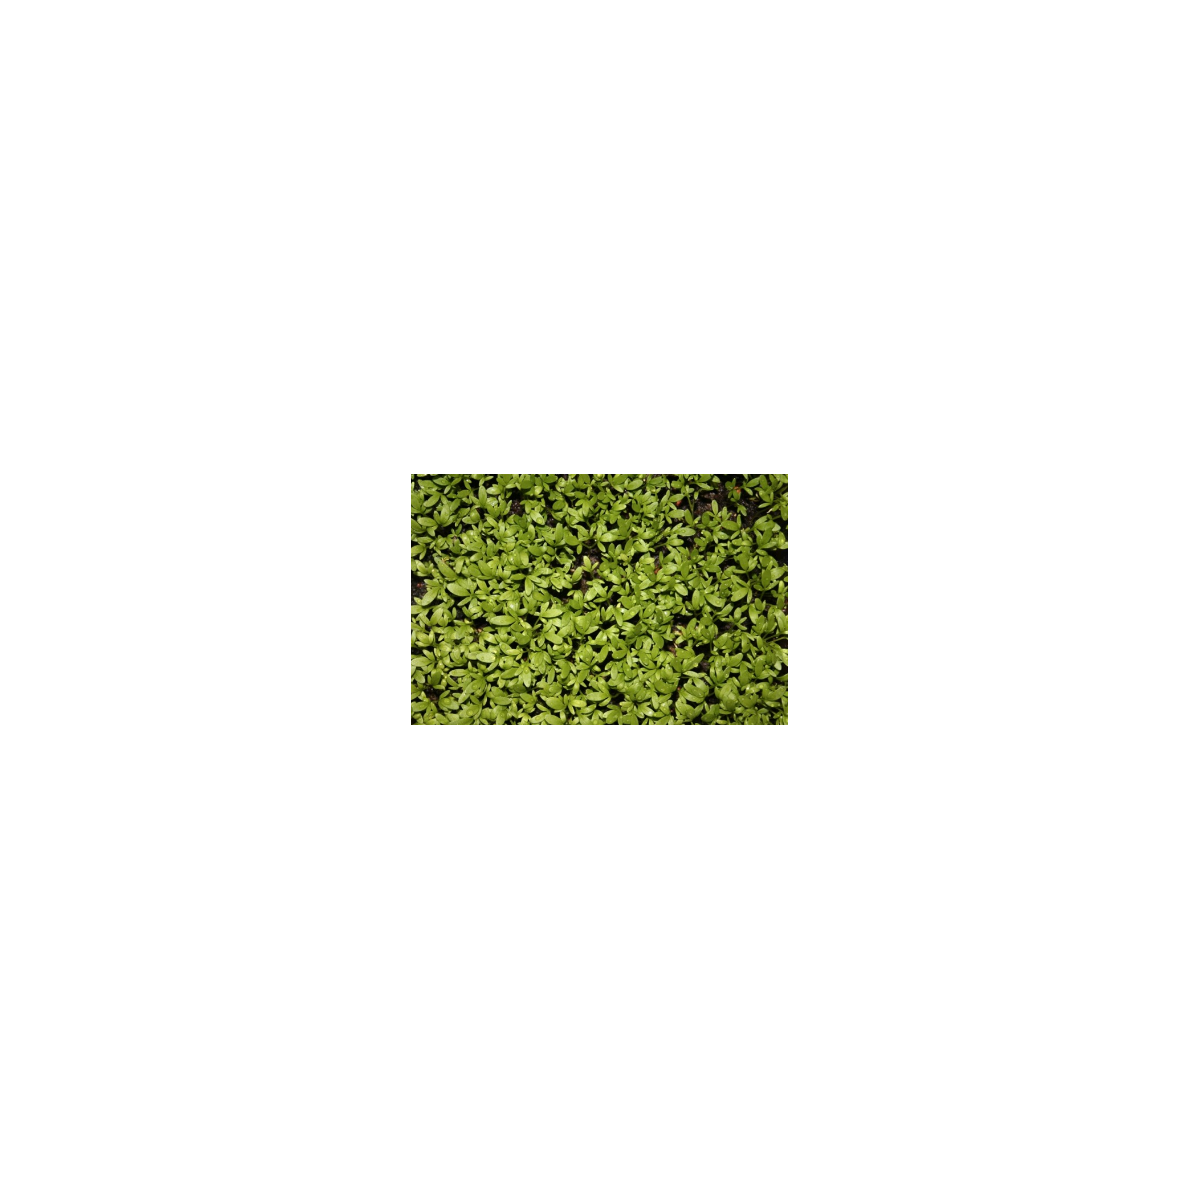 Řeřicha zahradní - rostlina Lepidium sativum - osivo řeřichy - 2.5 g